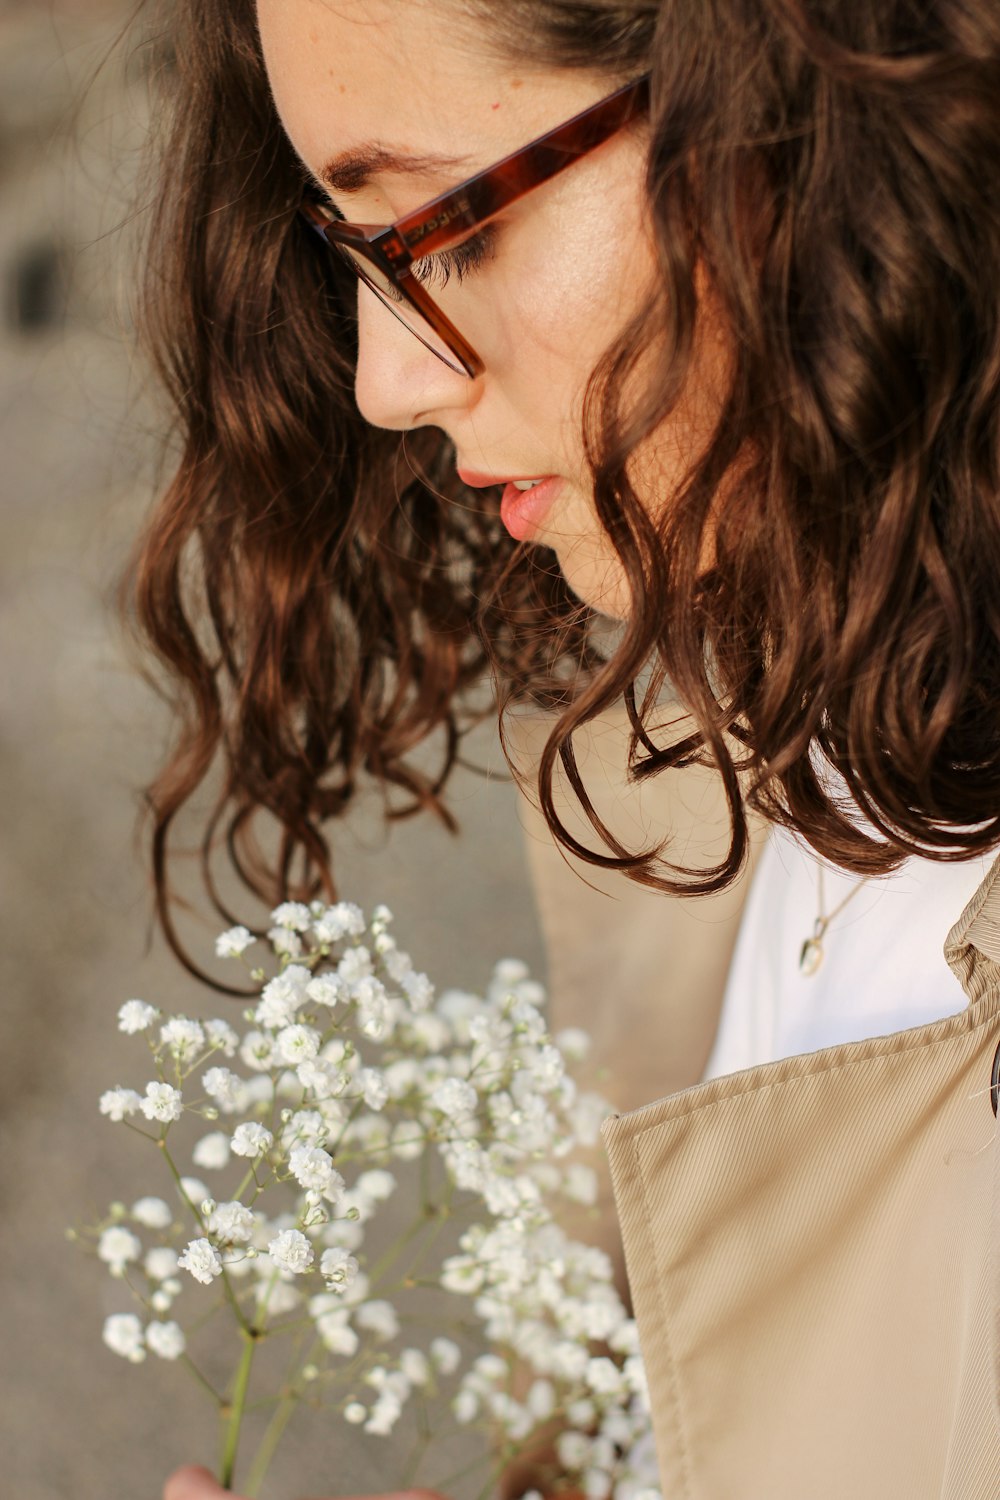 Eine Frau hält einen Strauß weißer Blumen